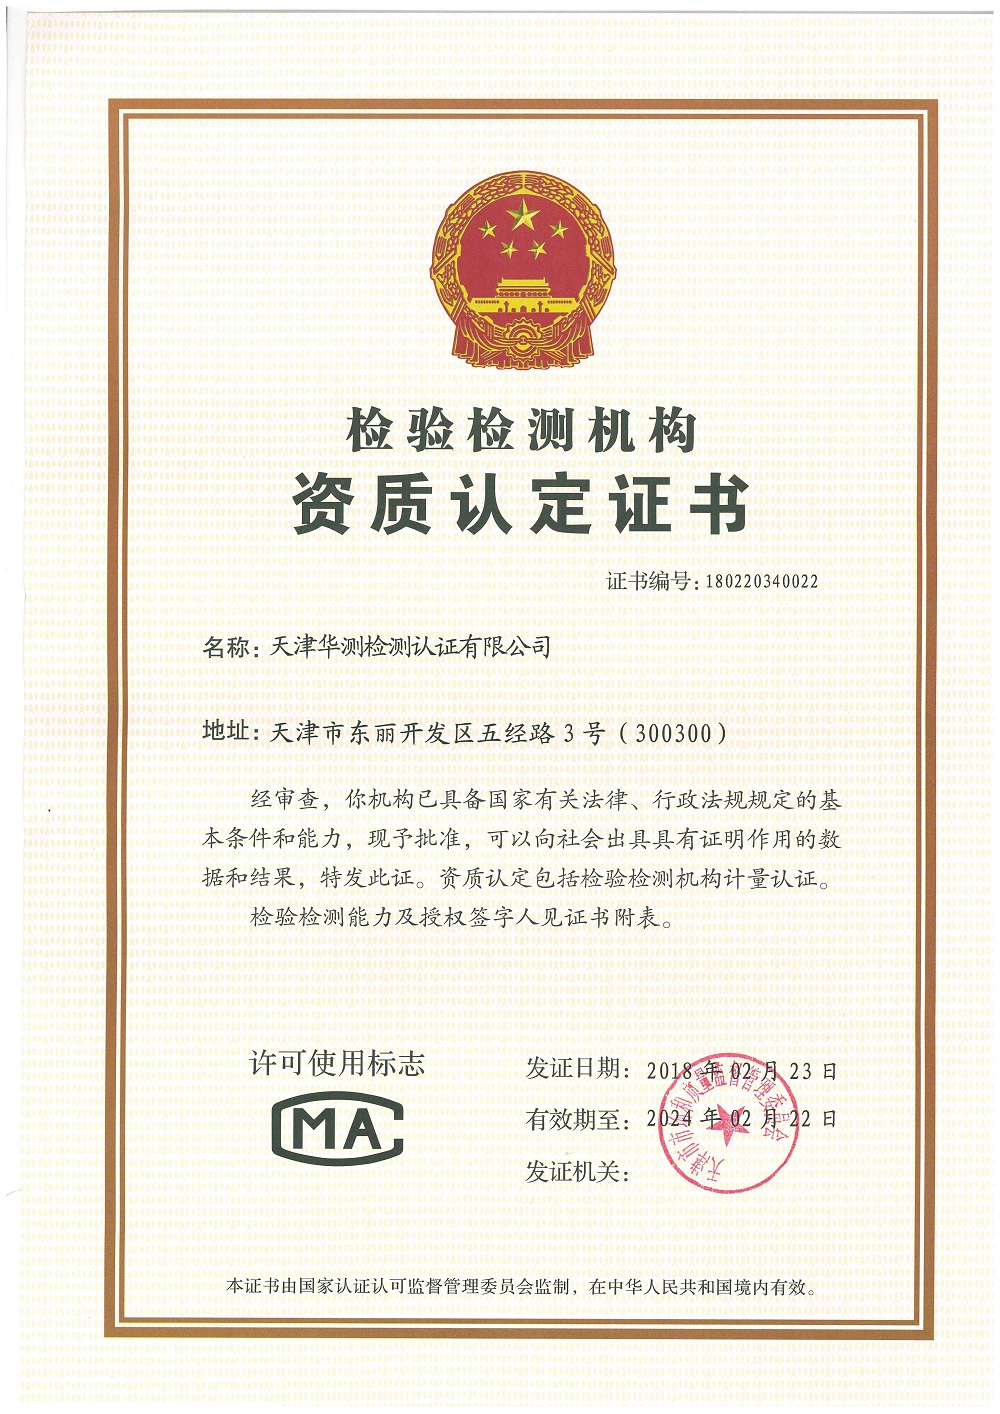 Tianjin Jinbin CMA Certificate